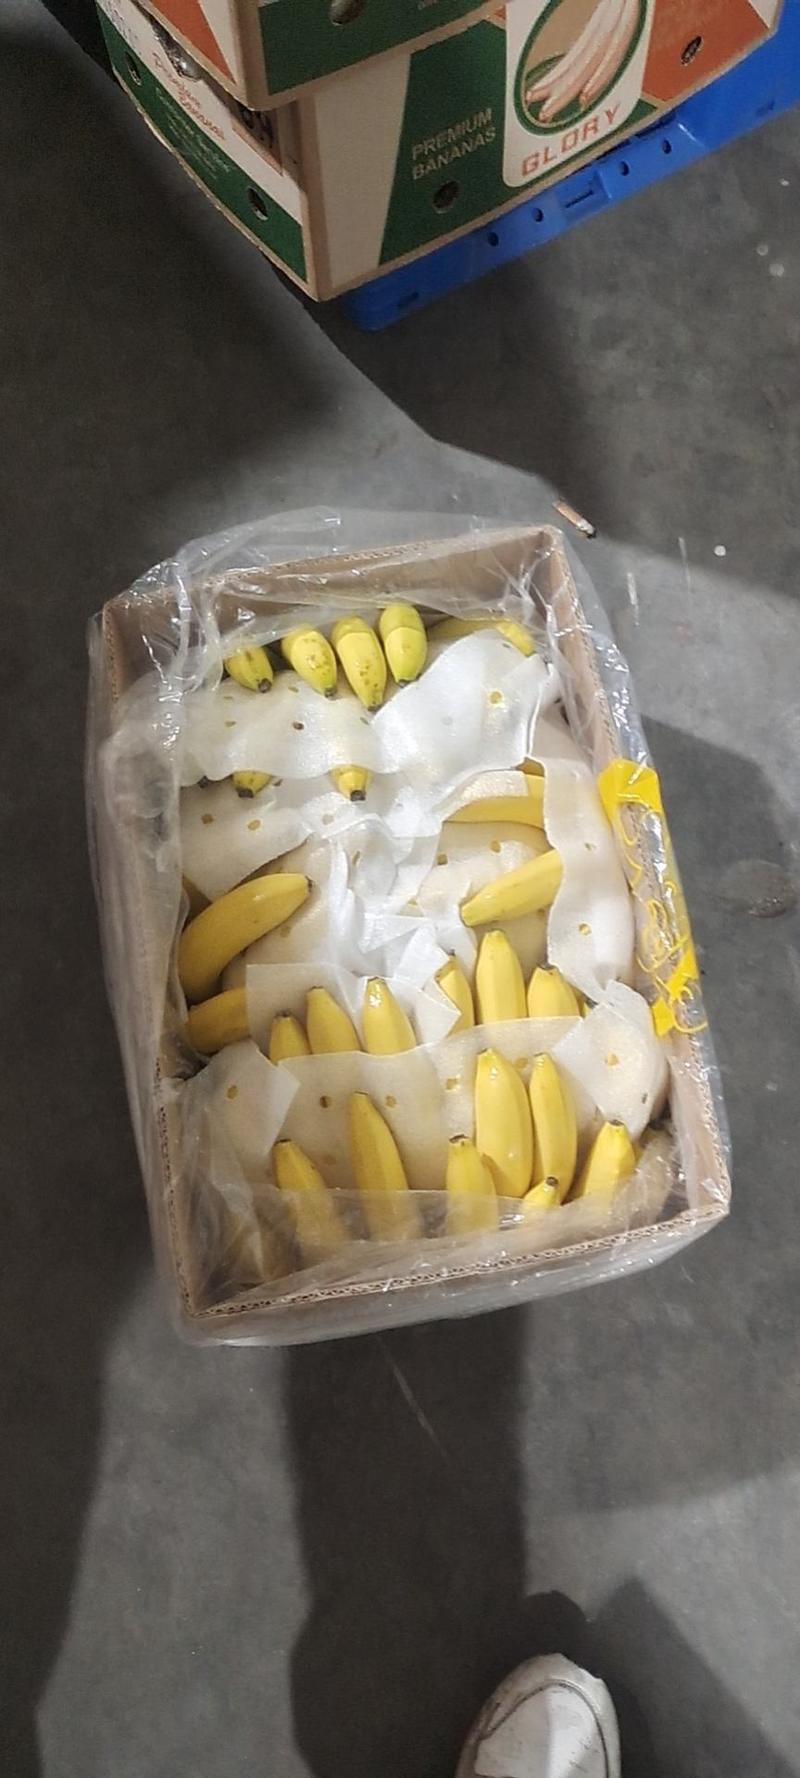 常年供应特价精品菲律宾进口香蕉30斤一箱只要19.9